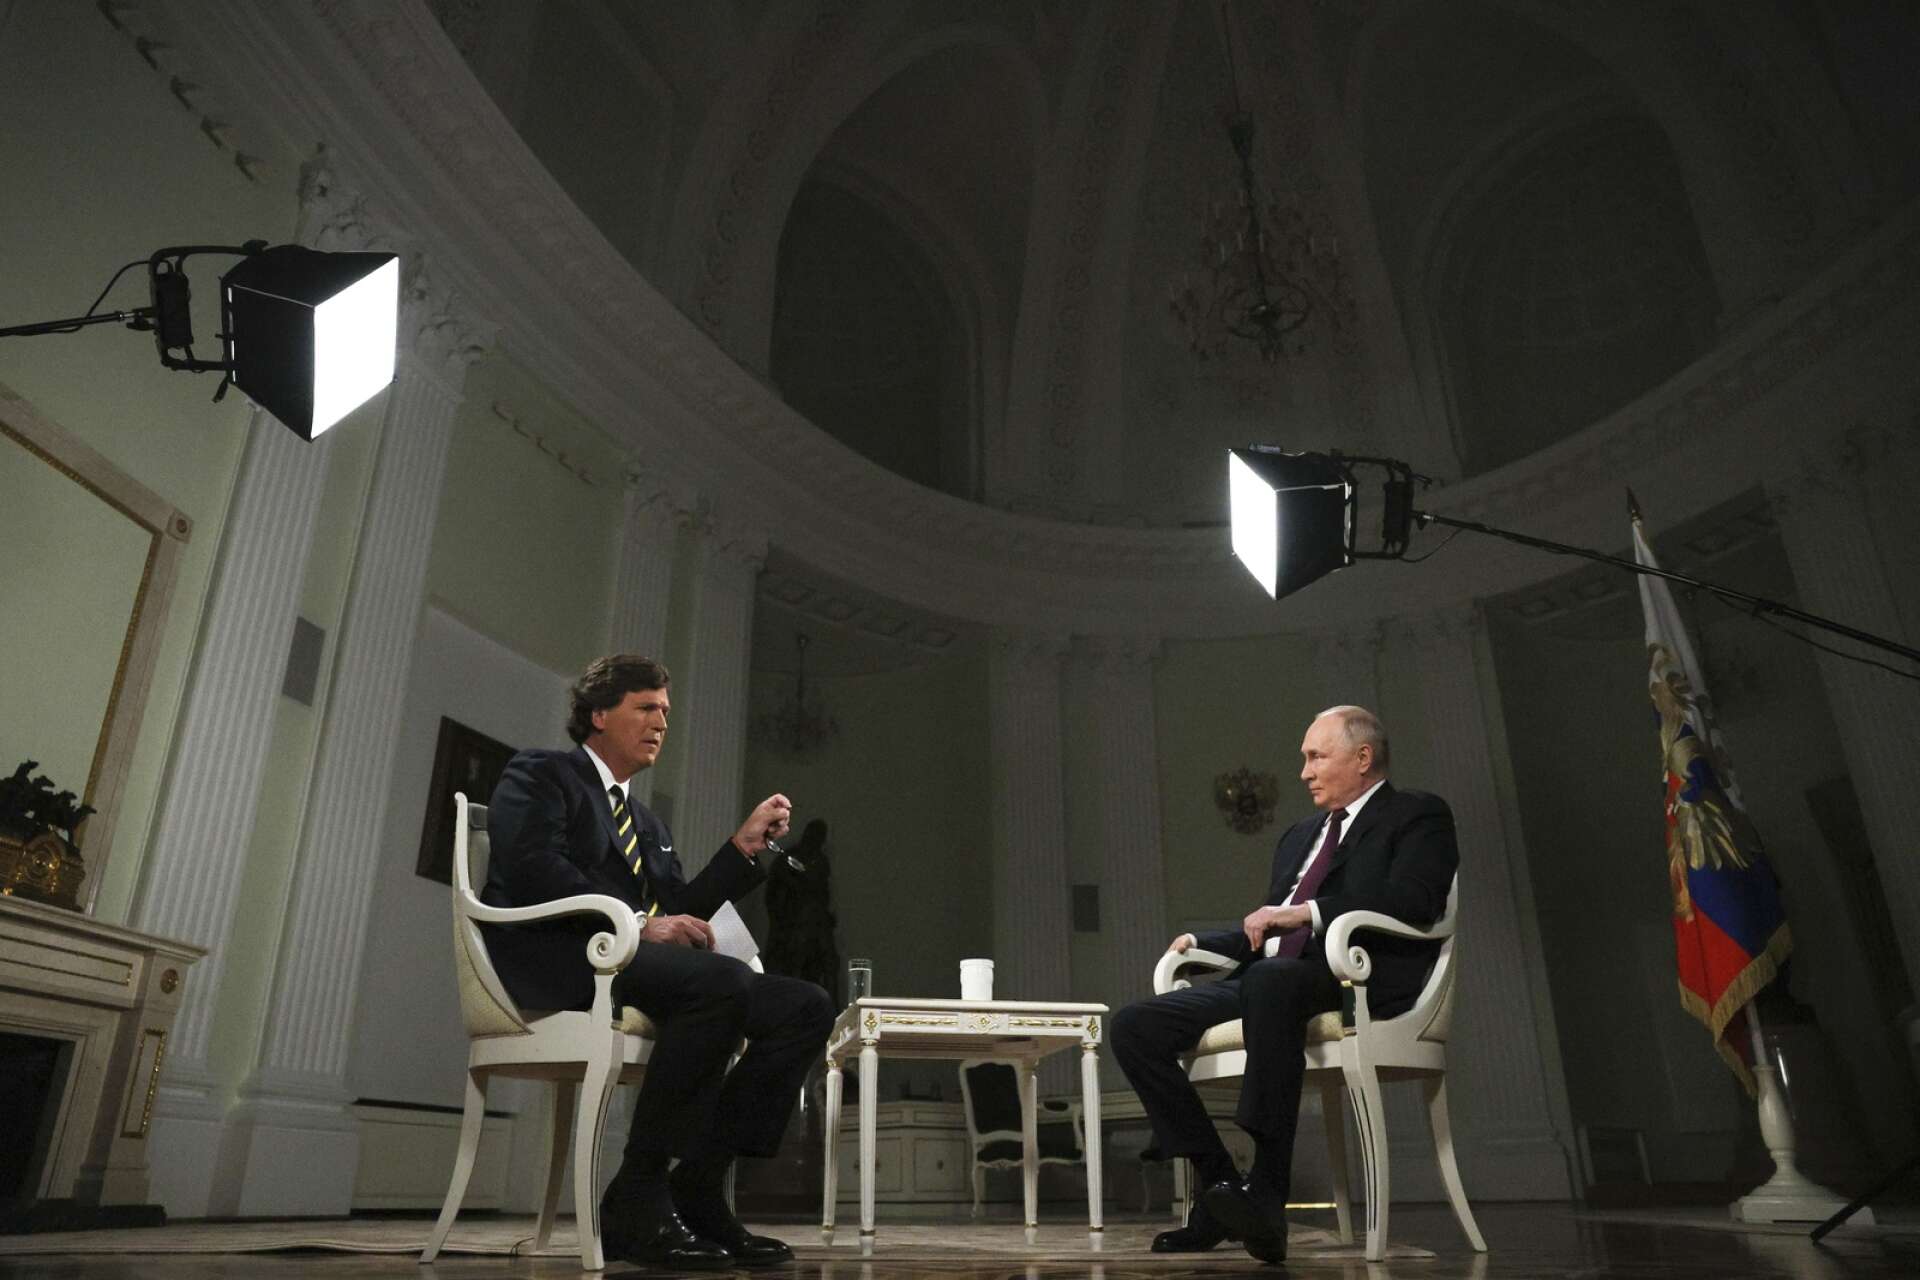 Rysslands president Vladimir Putin intervjuades av förre Fox News-journalisten Tucker Carlson i Kreml under förra veckan. ”En publicistisk freak show”, kallar AN:s krönikör Marcus Kohlberg intervjun.